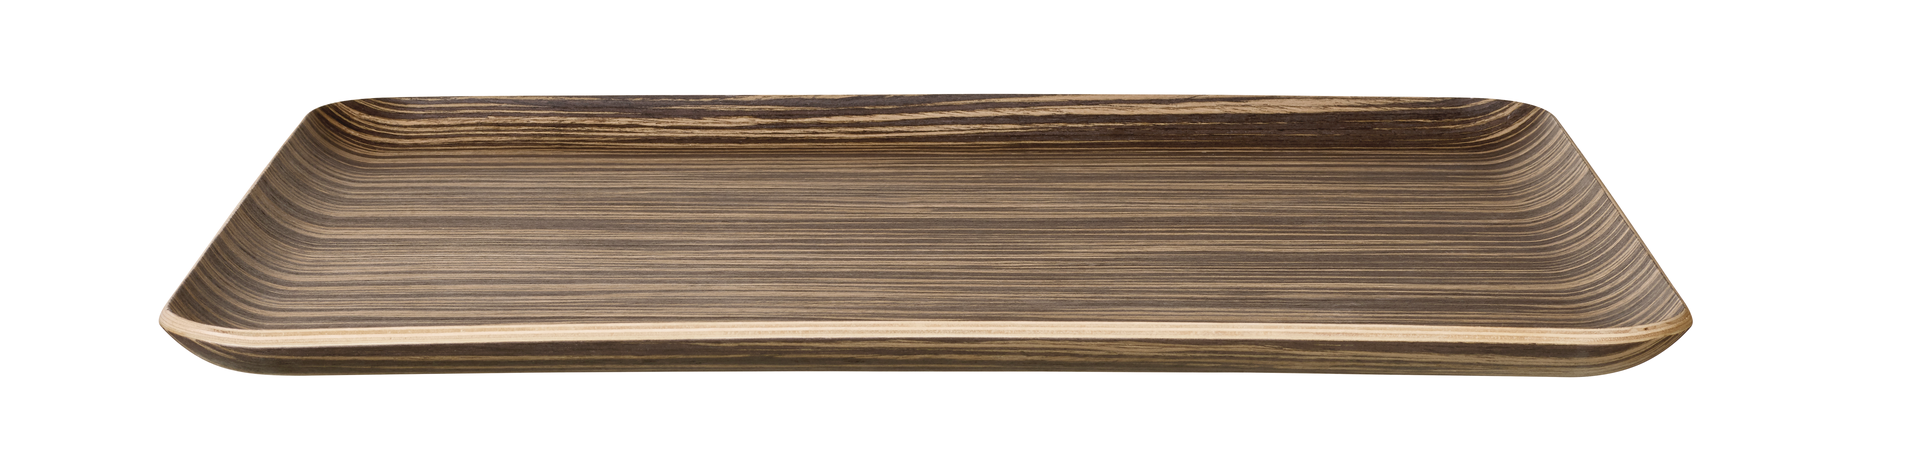 ASA Holztablett rechteckig, ebony wood